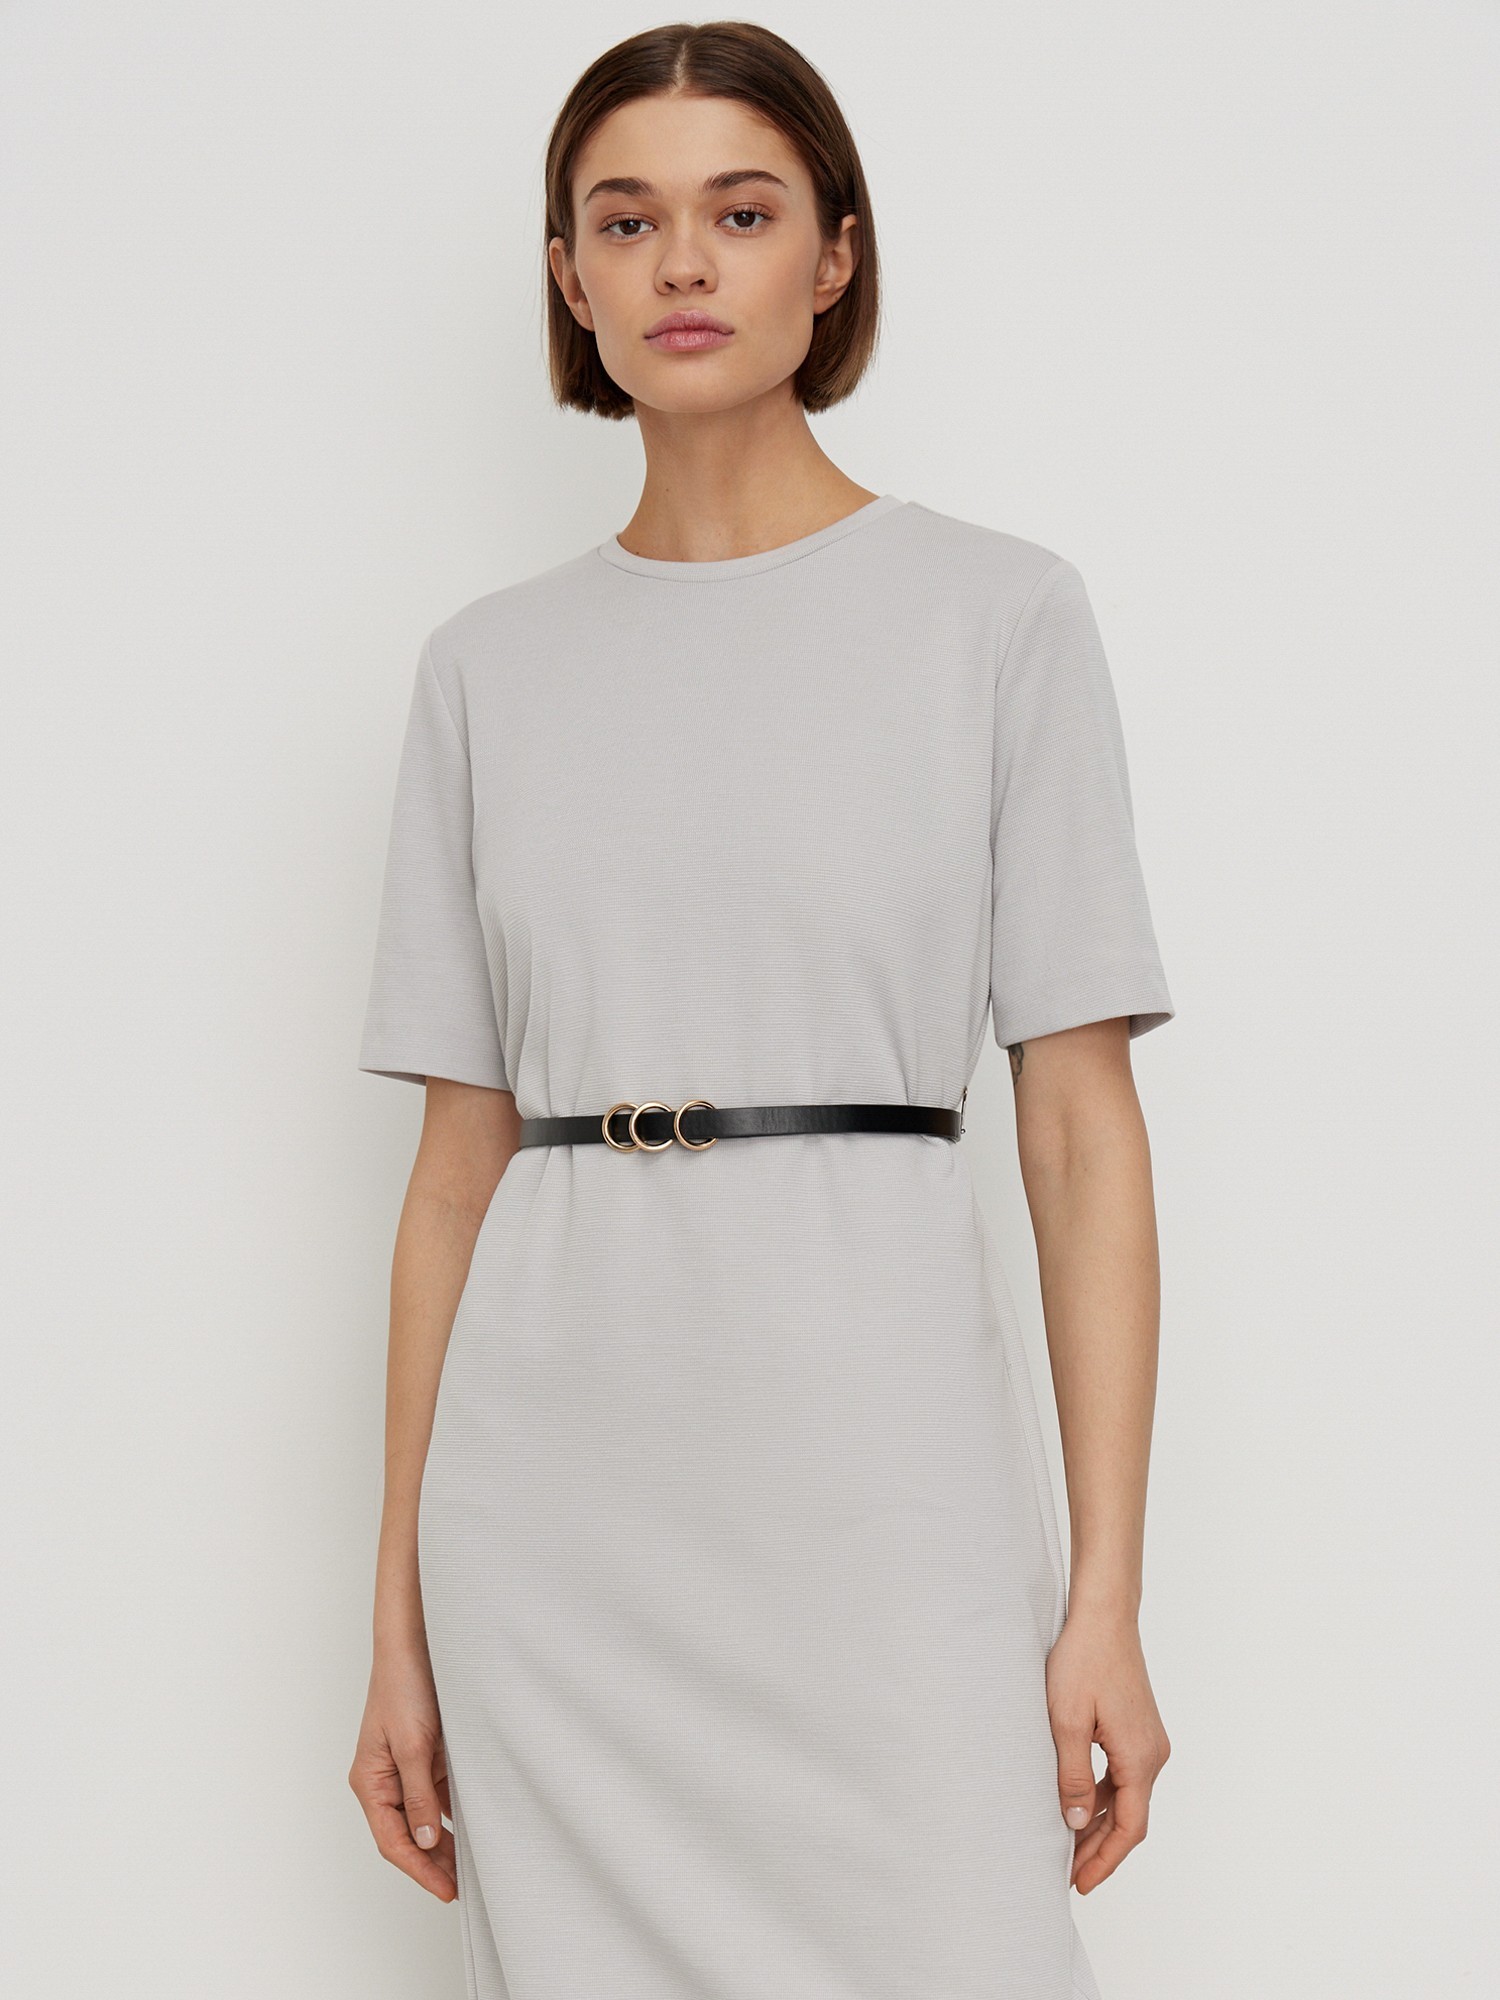 Платье с коротким рукавом трикотажное Elis DR0496K, цвет серый, размер 50 - фото 2